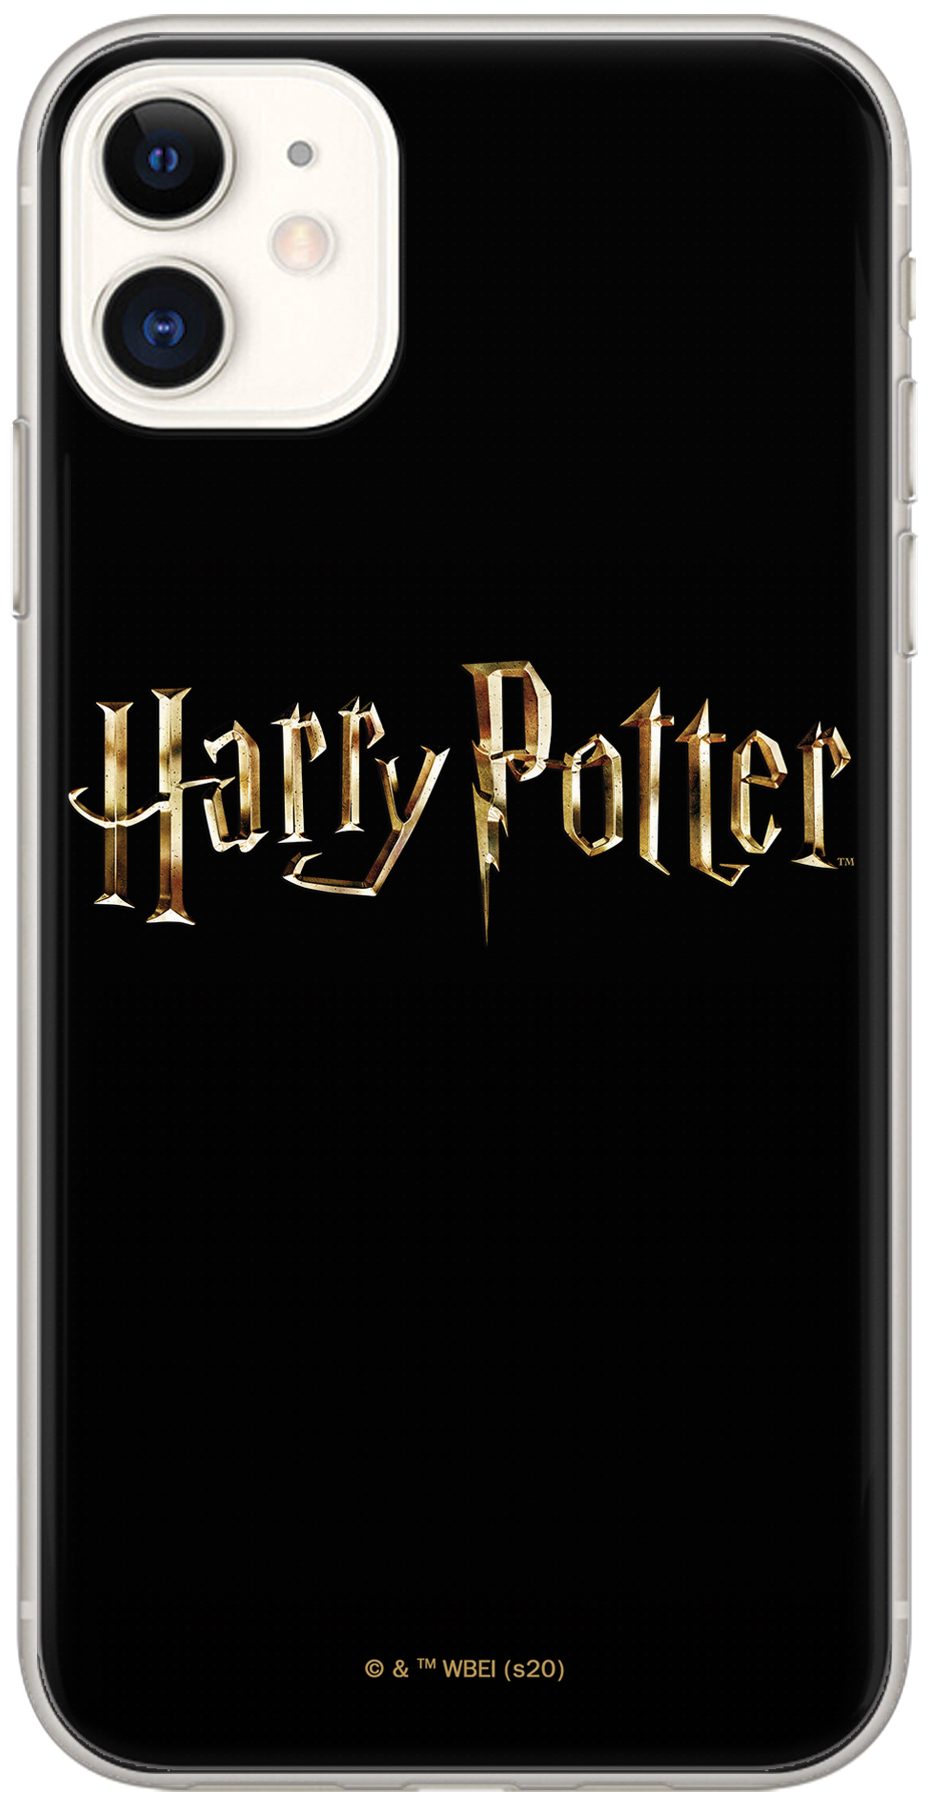 Ochranný kryt pro iPhone 6 / 6S - Harry Potter 045